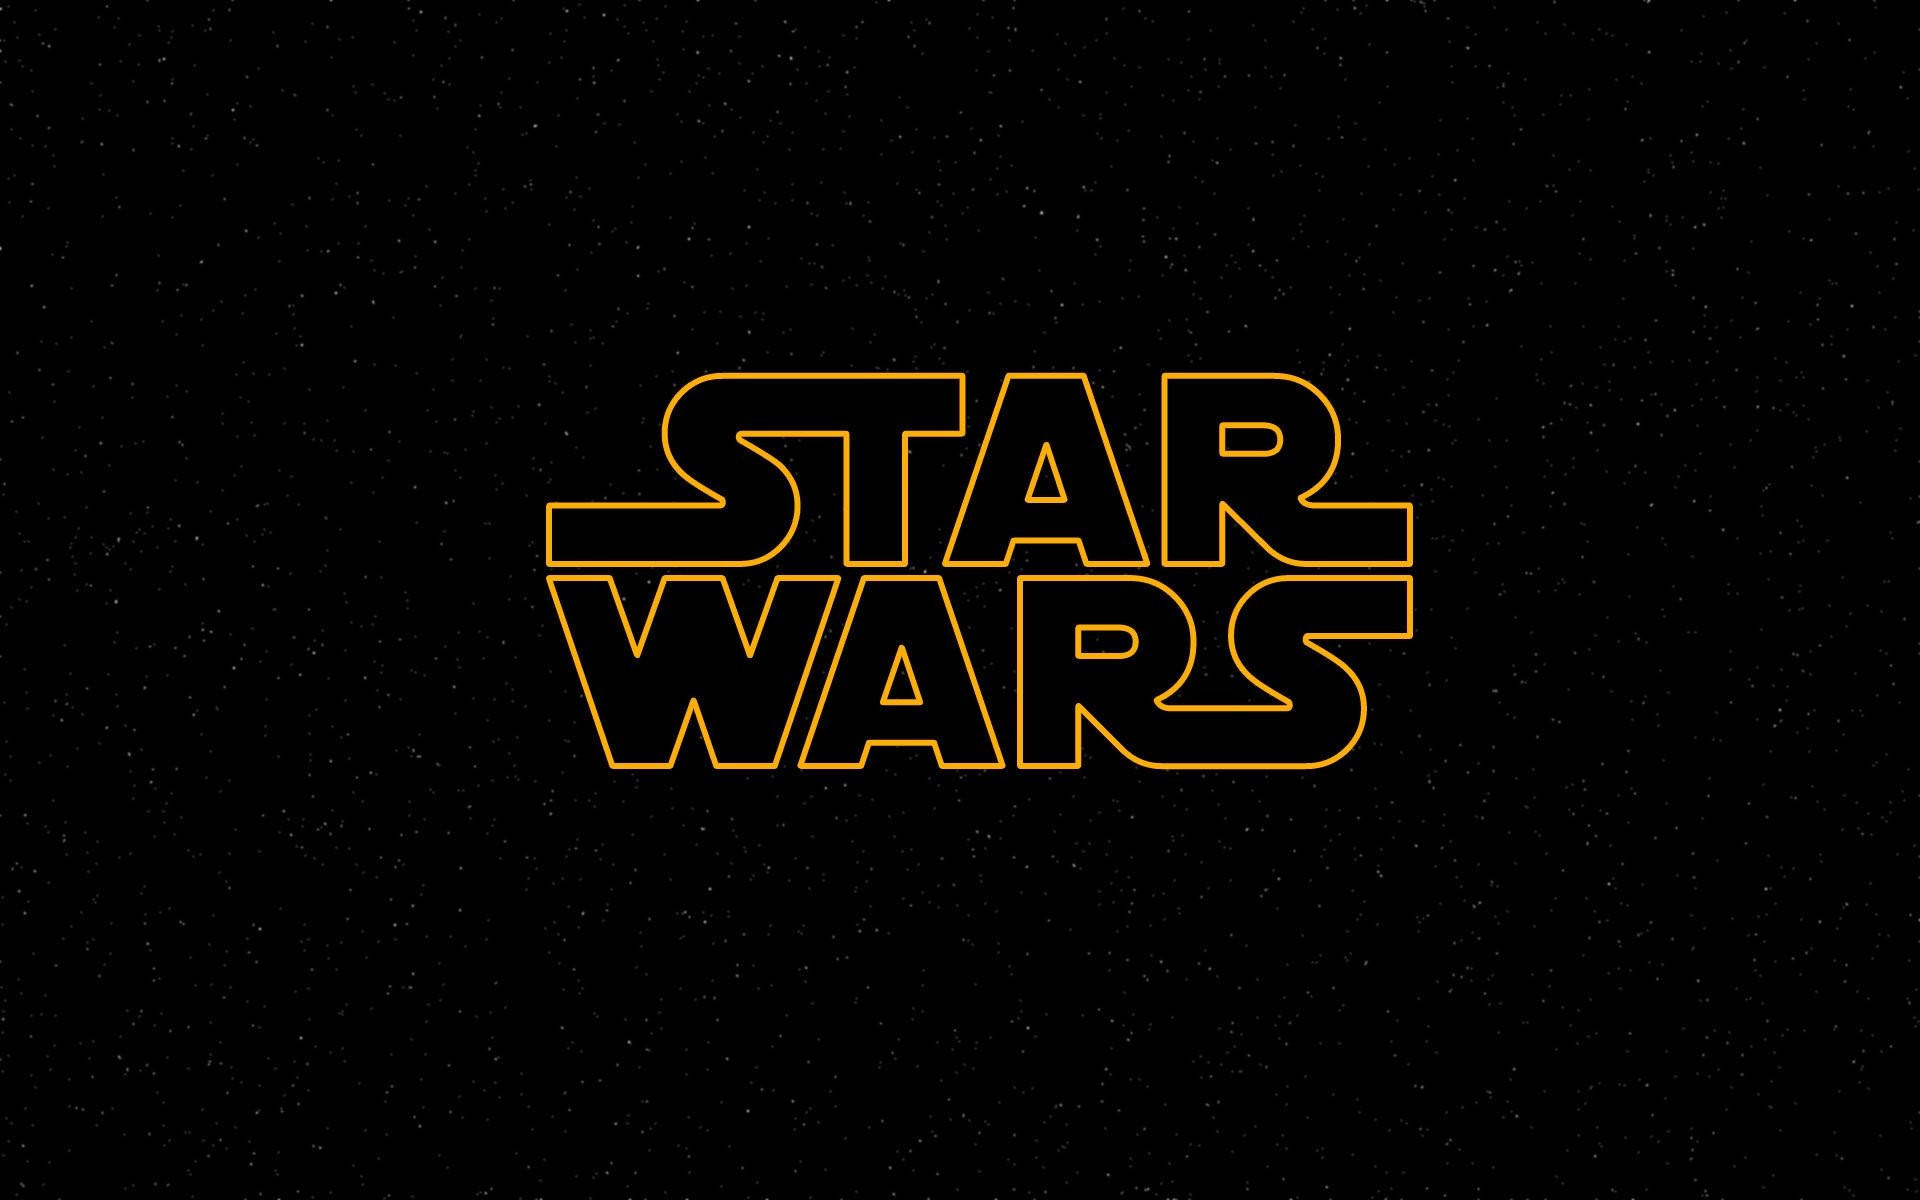 Star wars wallpaper stars logo desktop archives